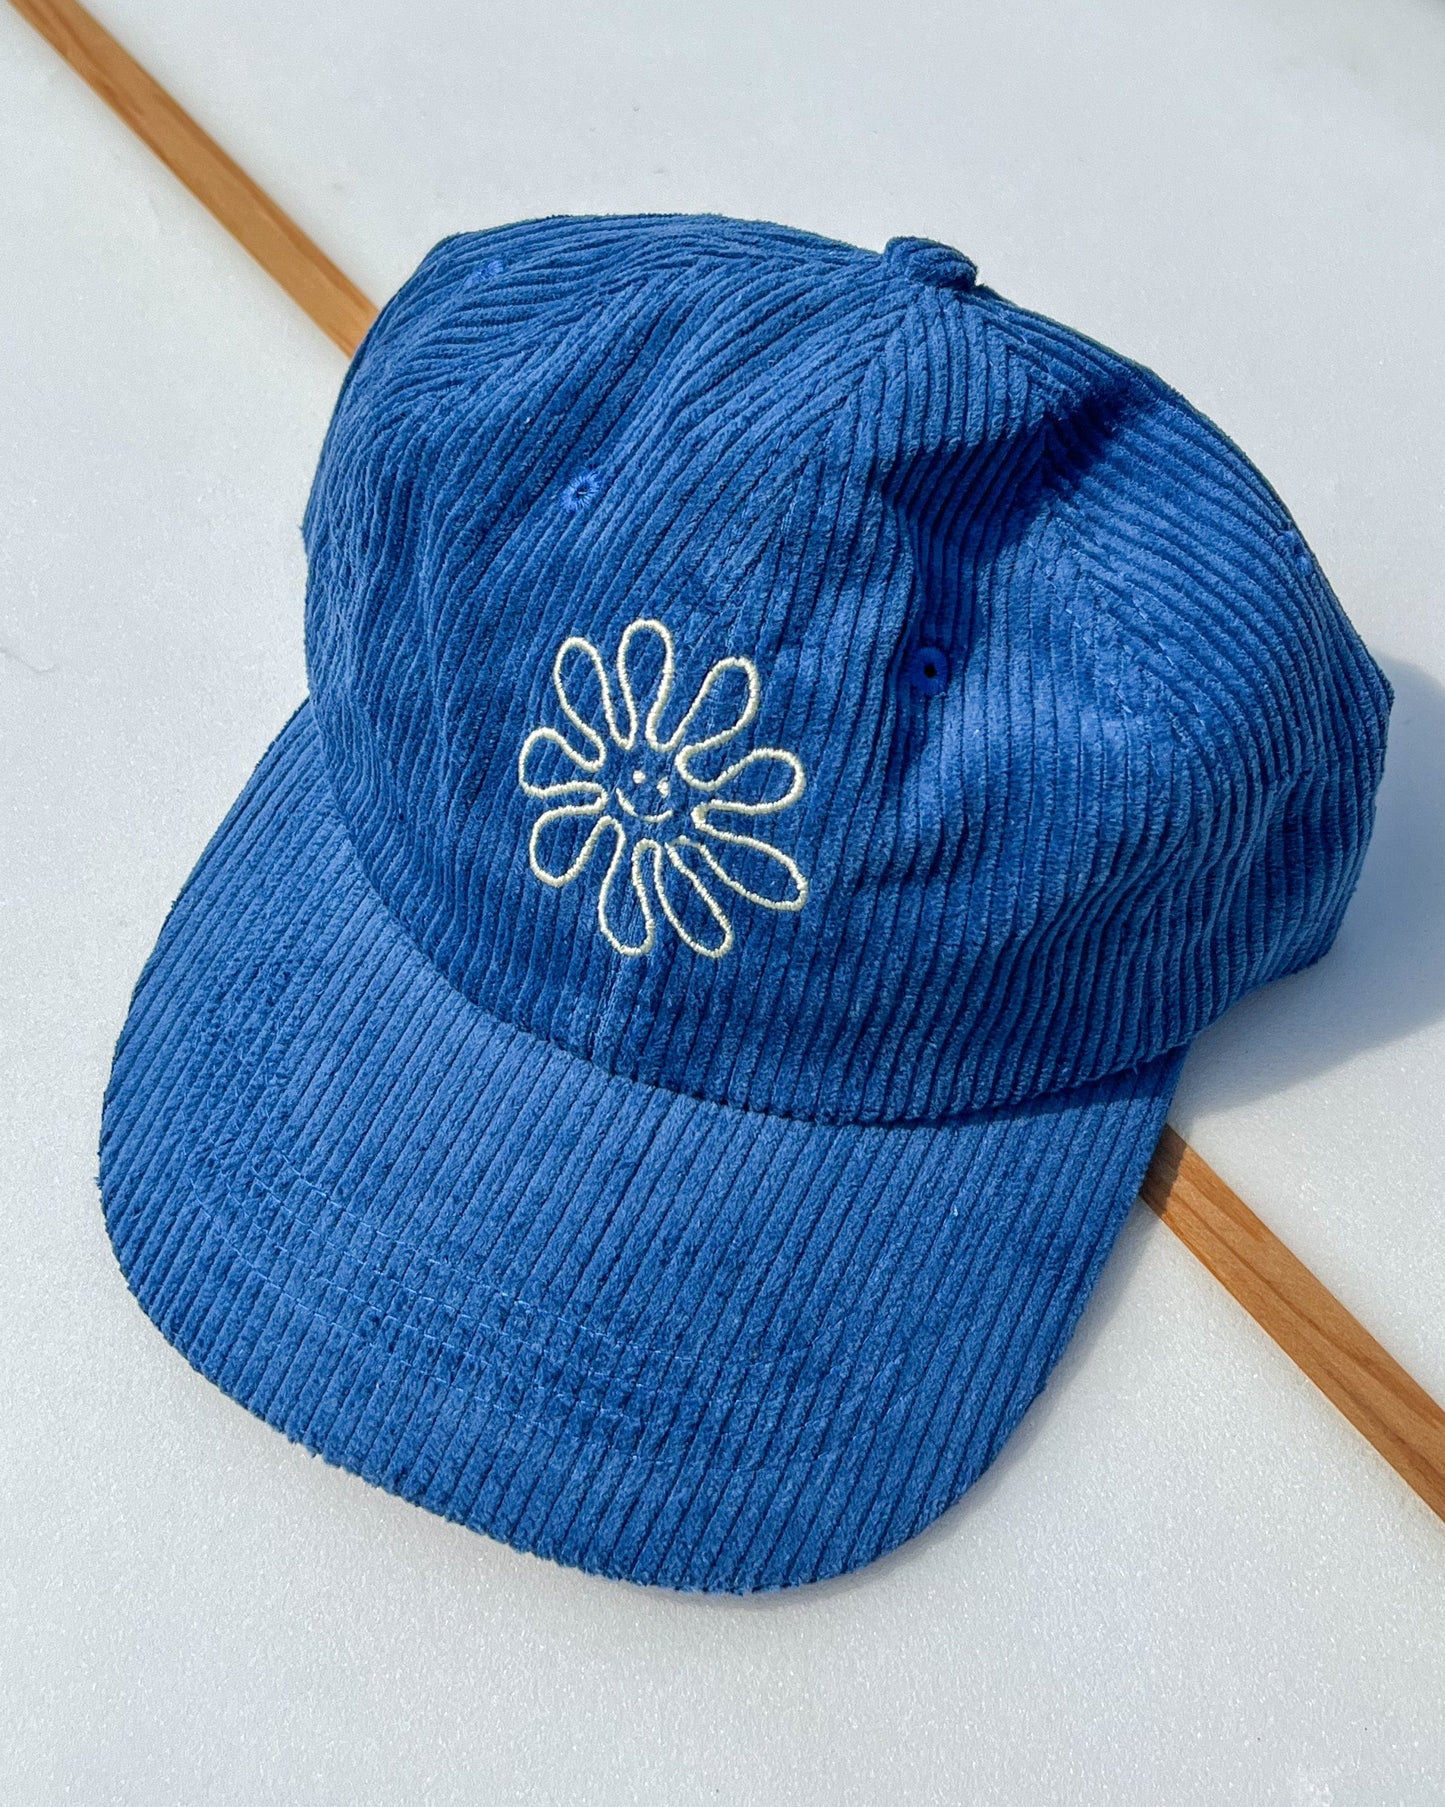 vetements surf salty smile Flower Cord Cap Bleu marque eco responsable coton bio